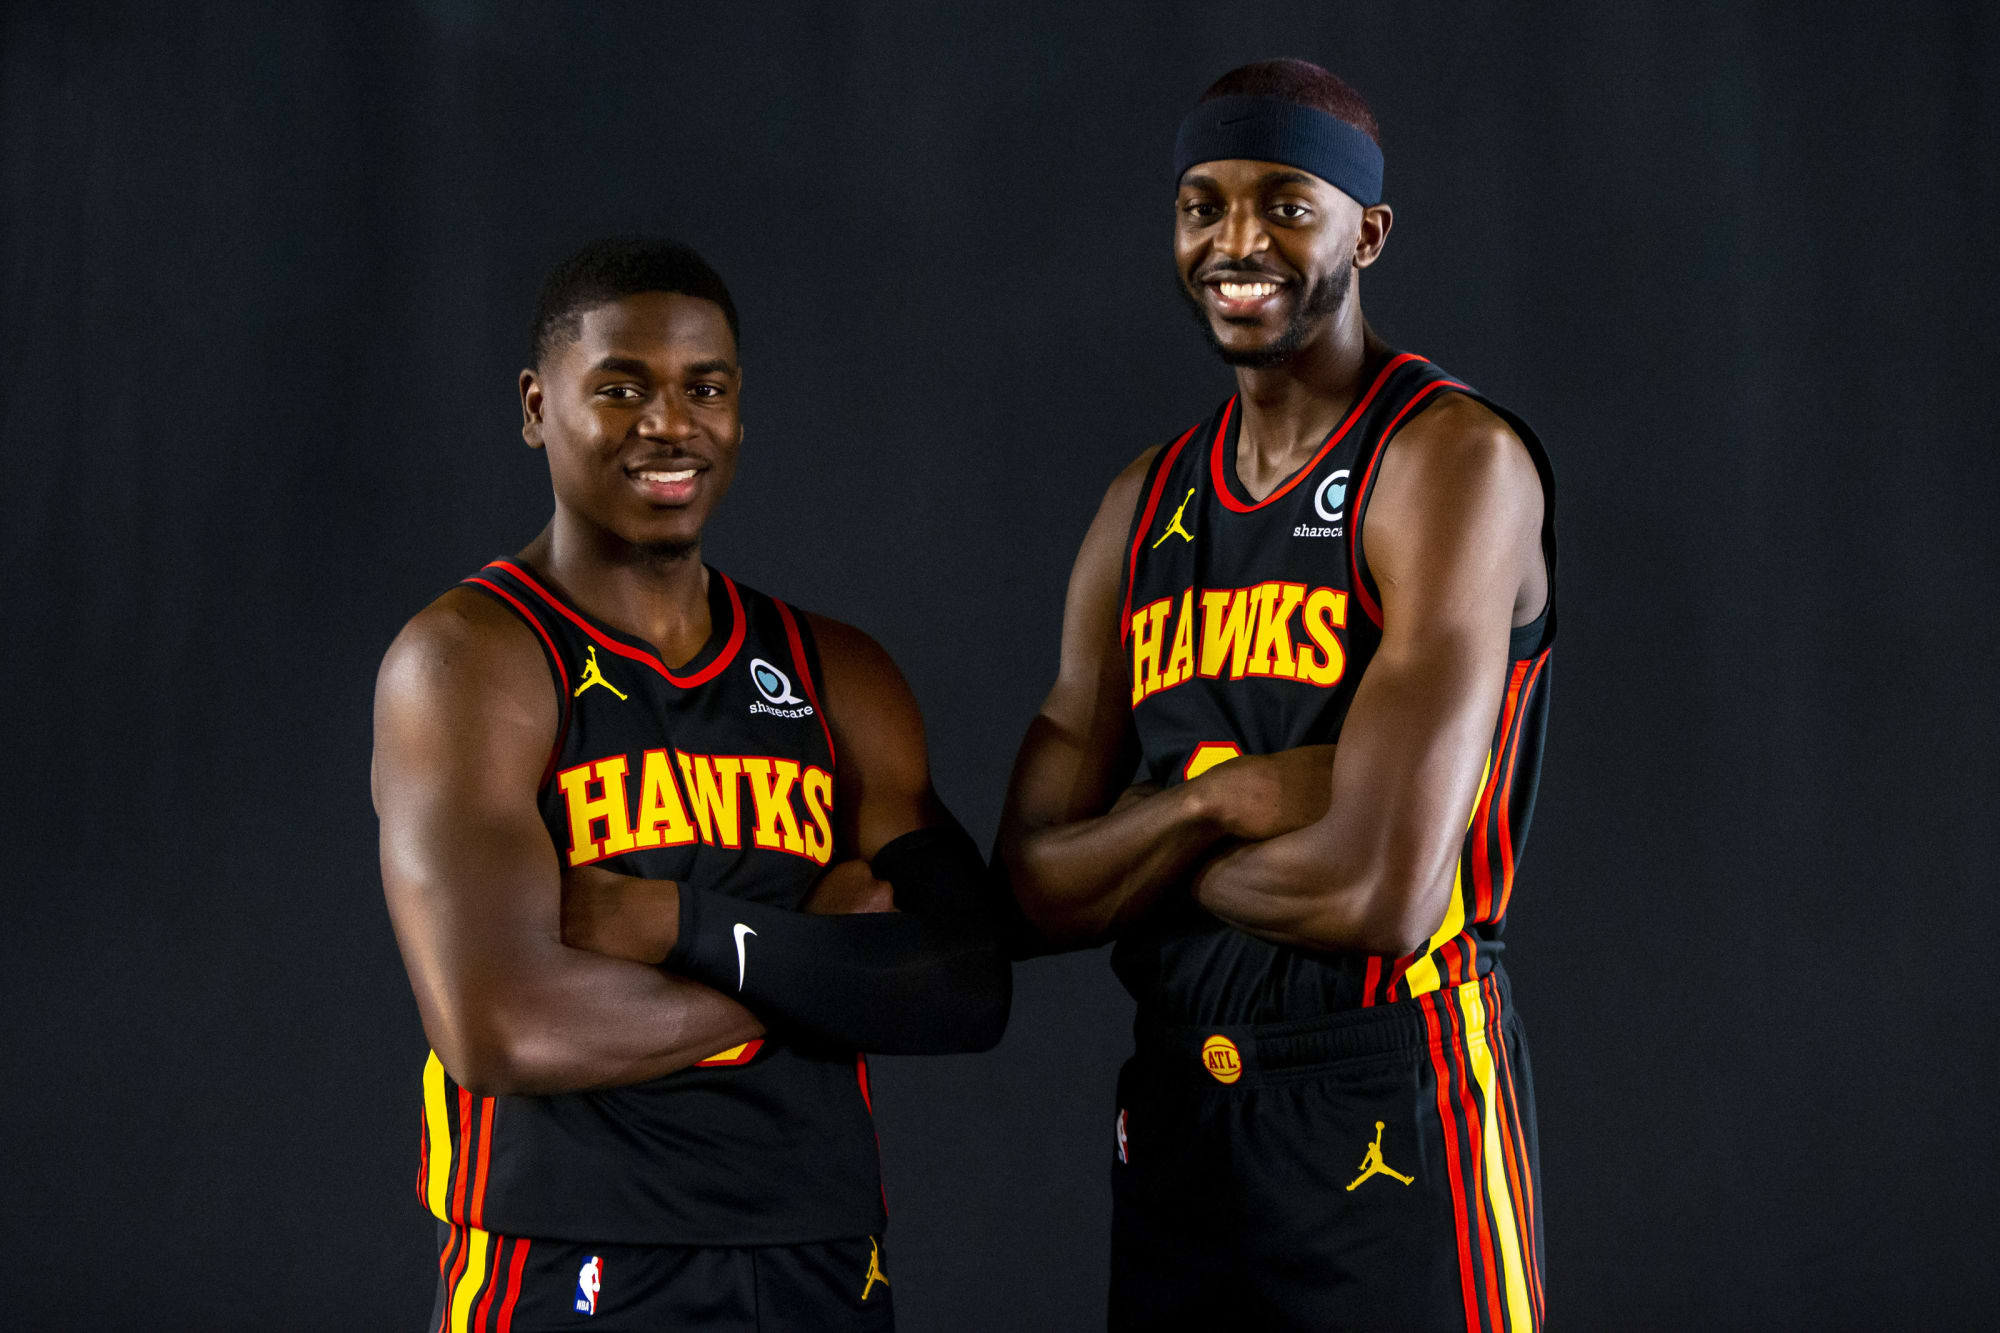 Atlanta Hawks’ Aaron and Justin Holiday achieve key career milestone